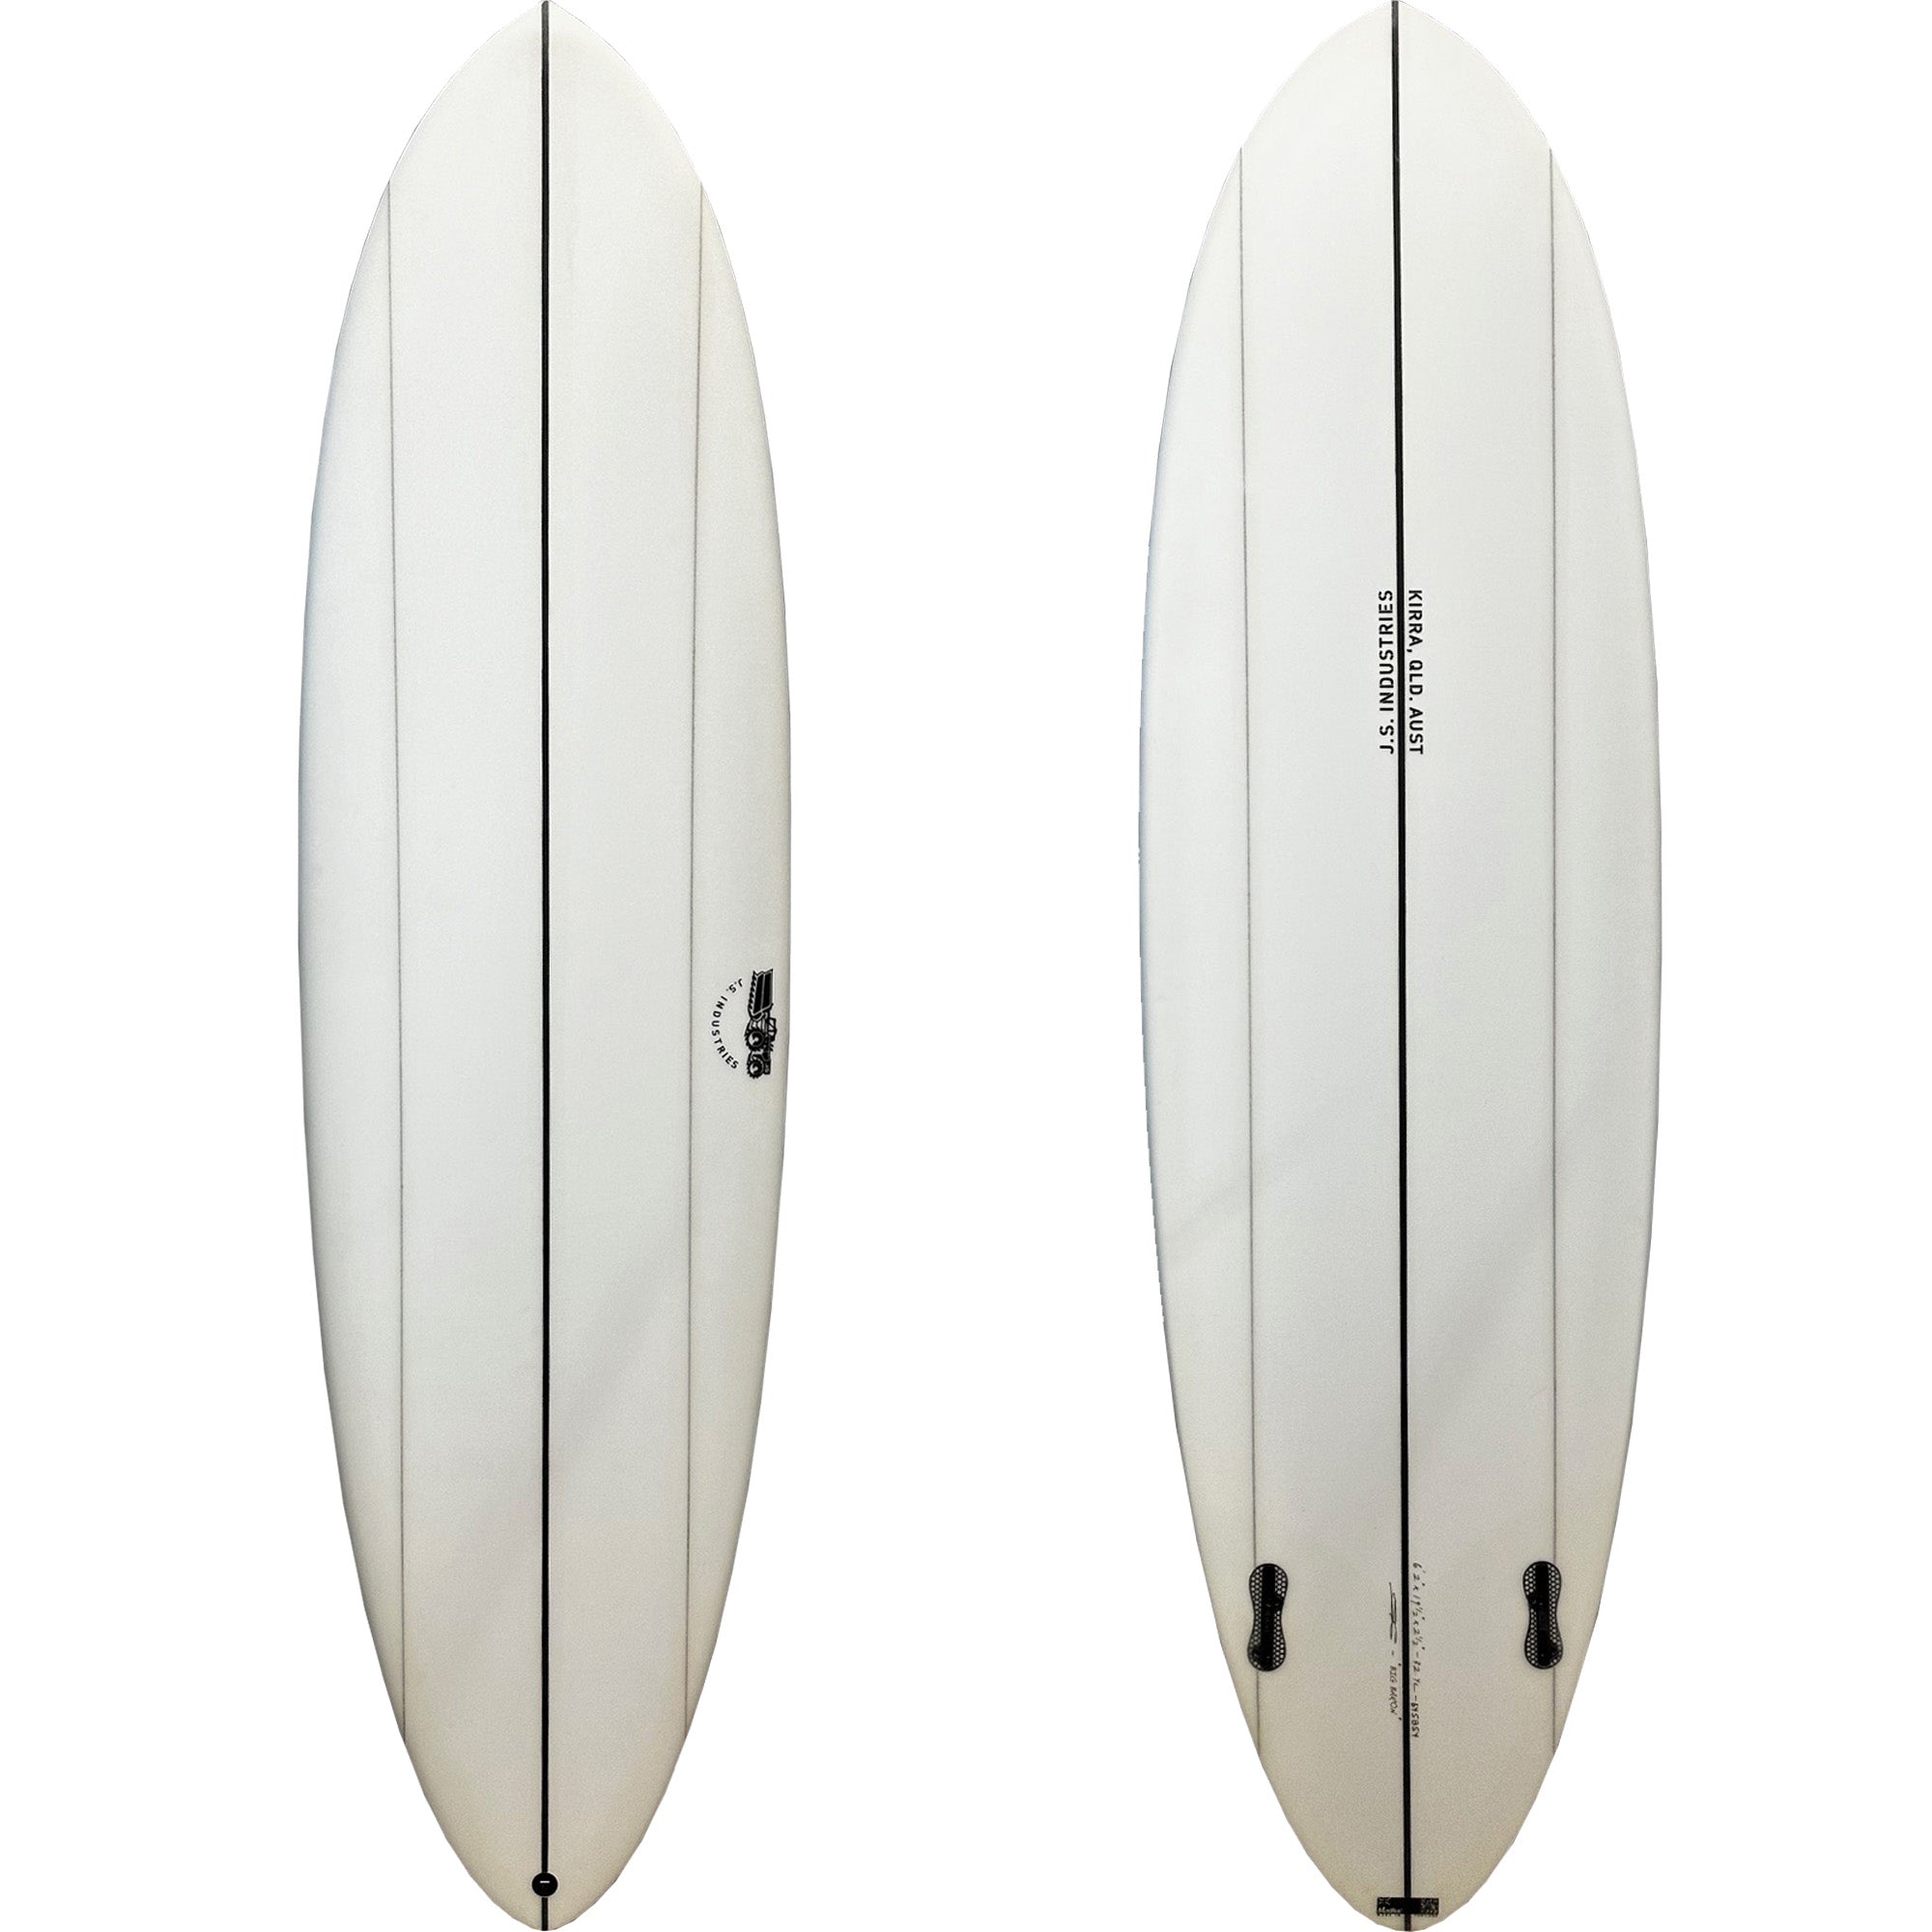 JS Big Baron Surfboard - FCS II